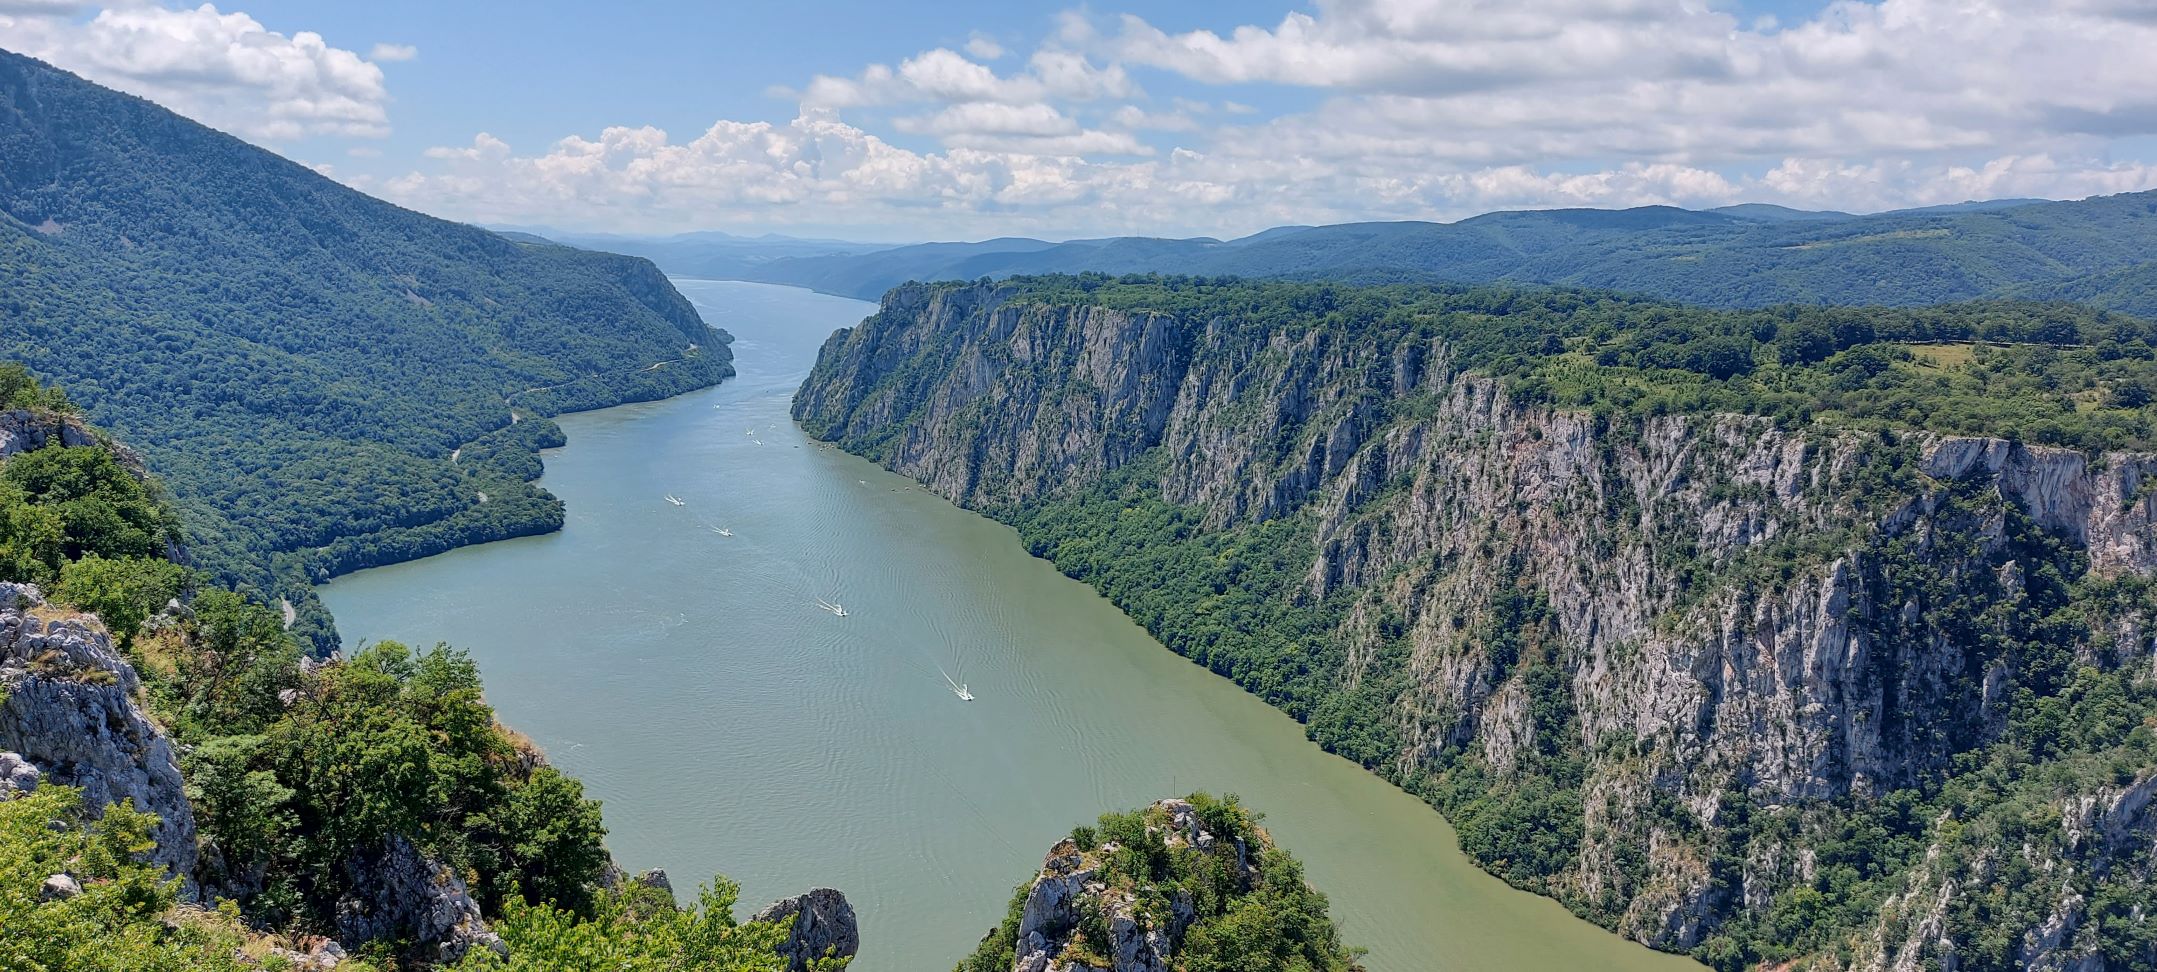 Дунав као инспирација – ЈП „Национални парк Ђердап“ на 44. Међународном сајму туризма у Београду